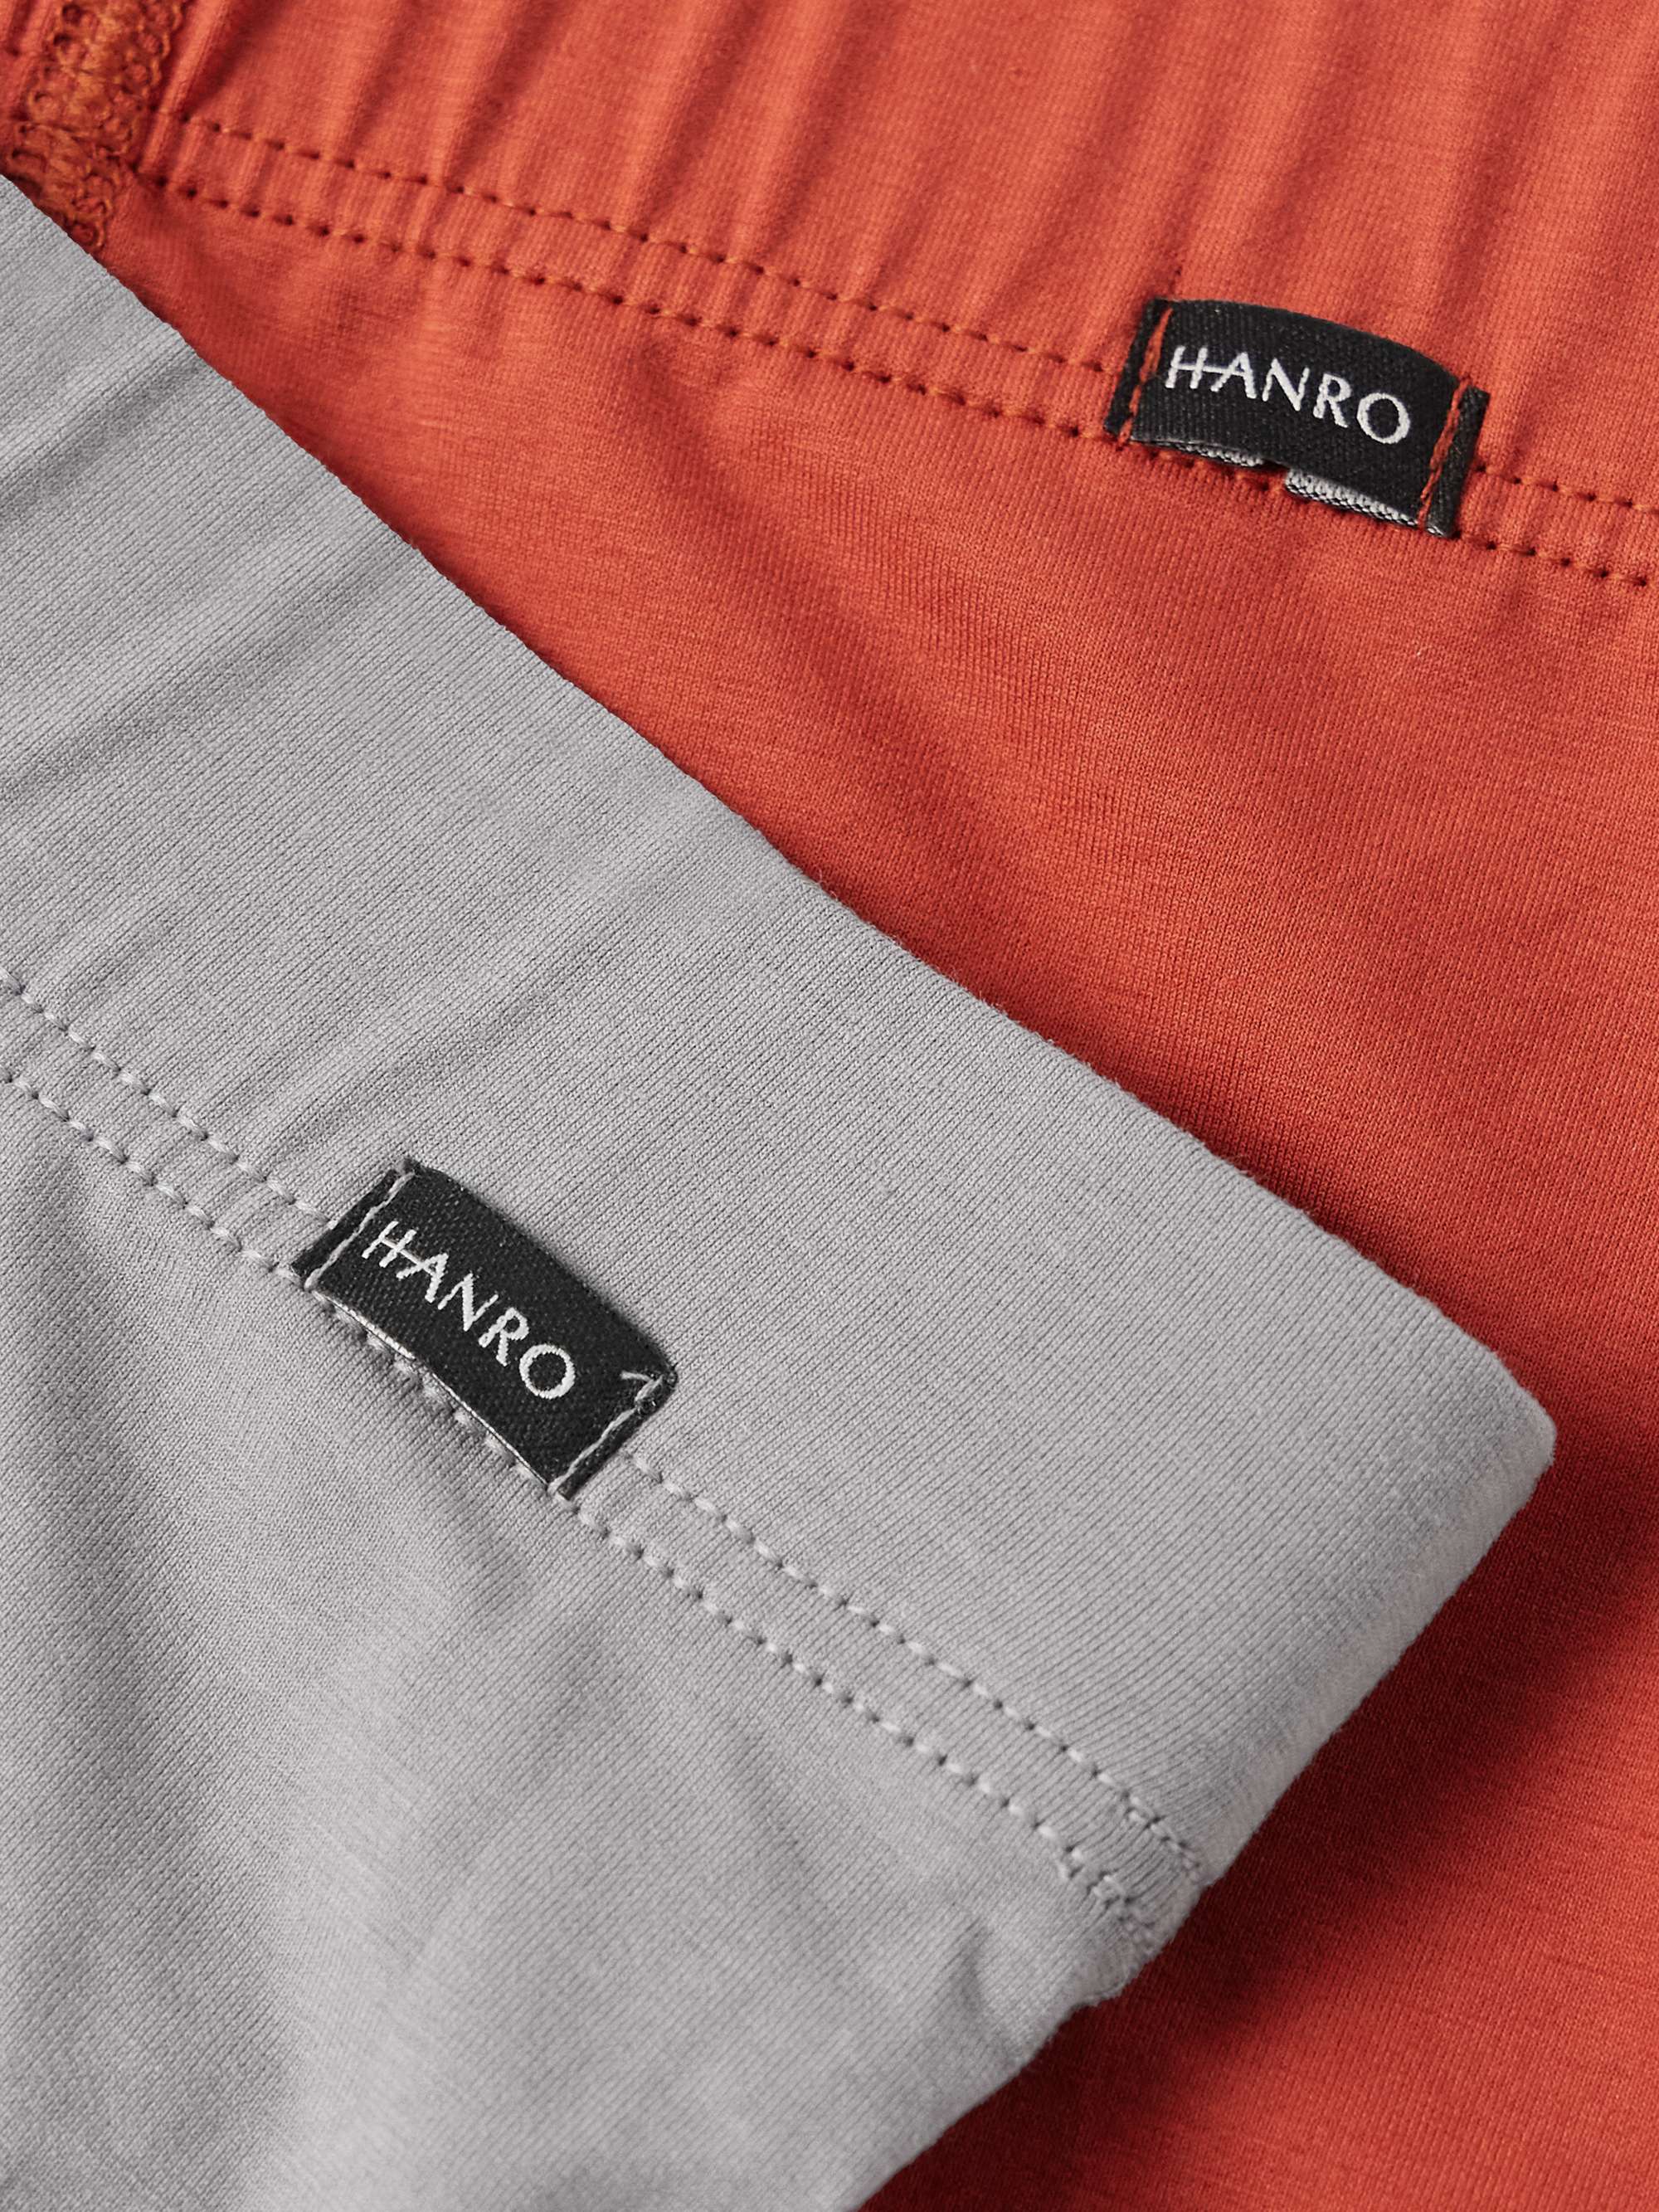 Hanro - Essentials Two-Pack Stretch-Cotton Briefs - Multi Hanro